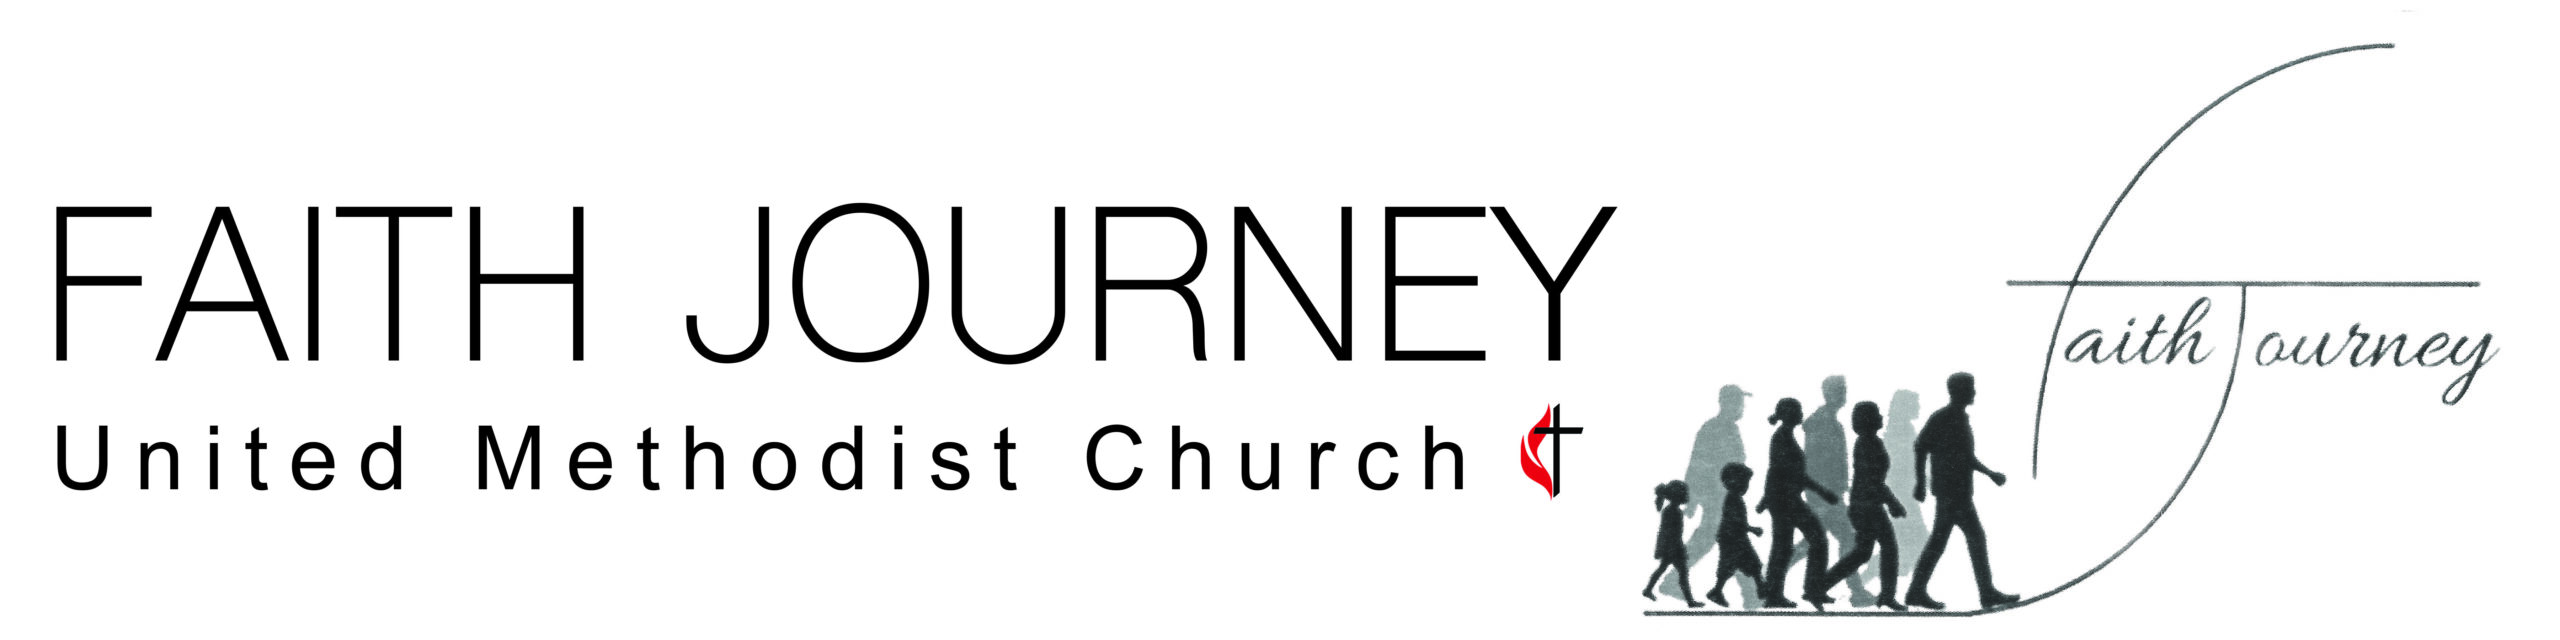 Faith Journey United Methodist Church